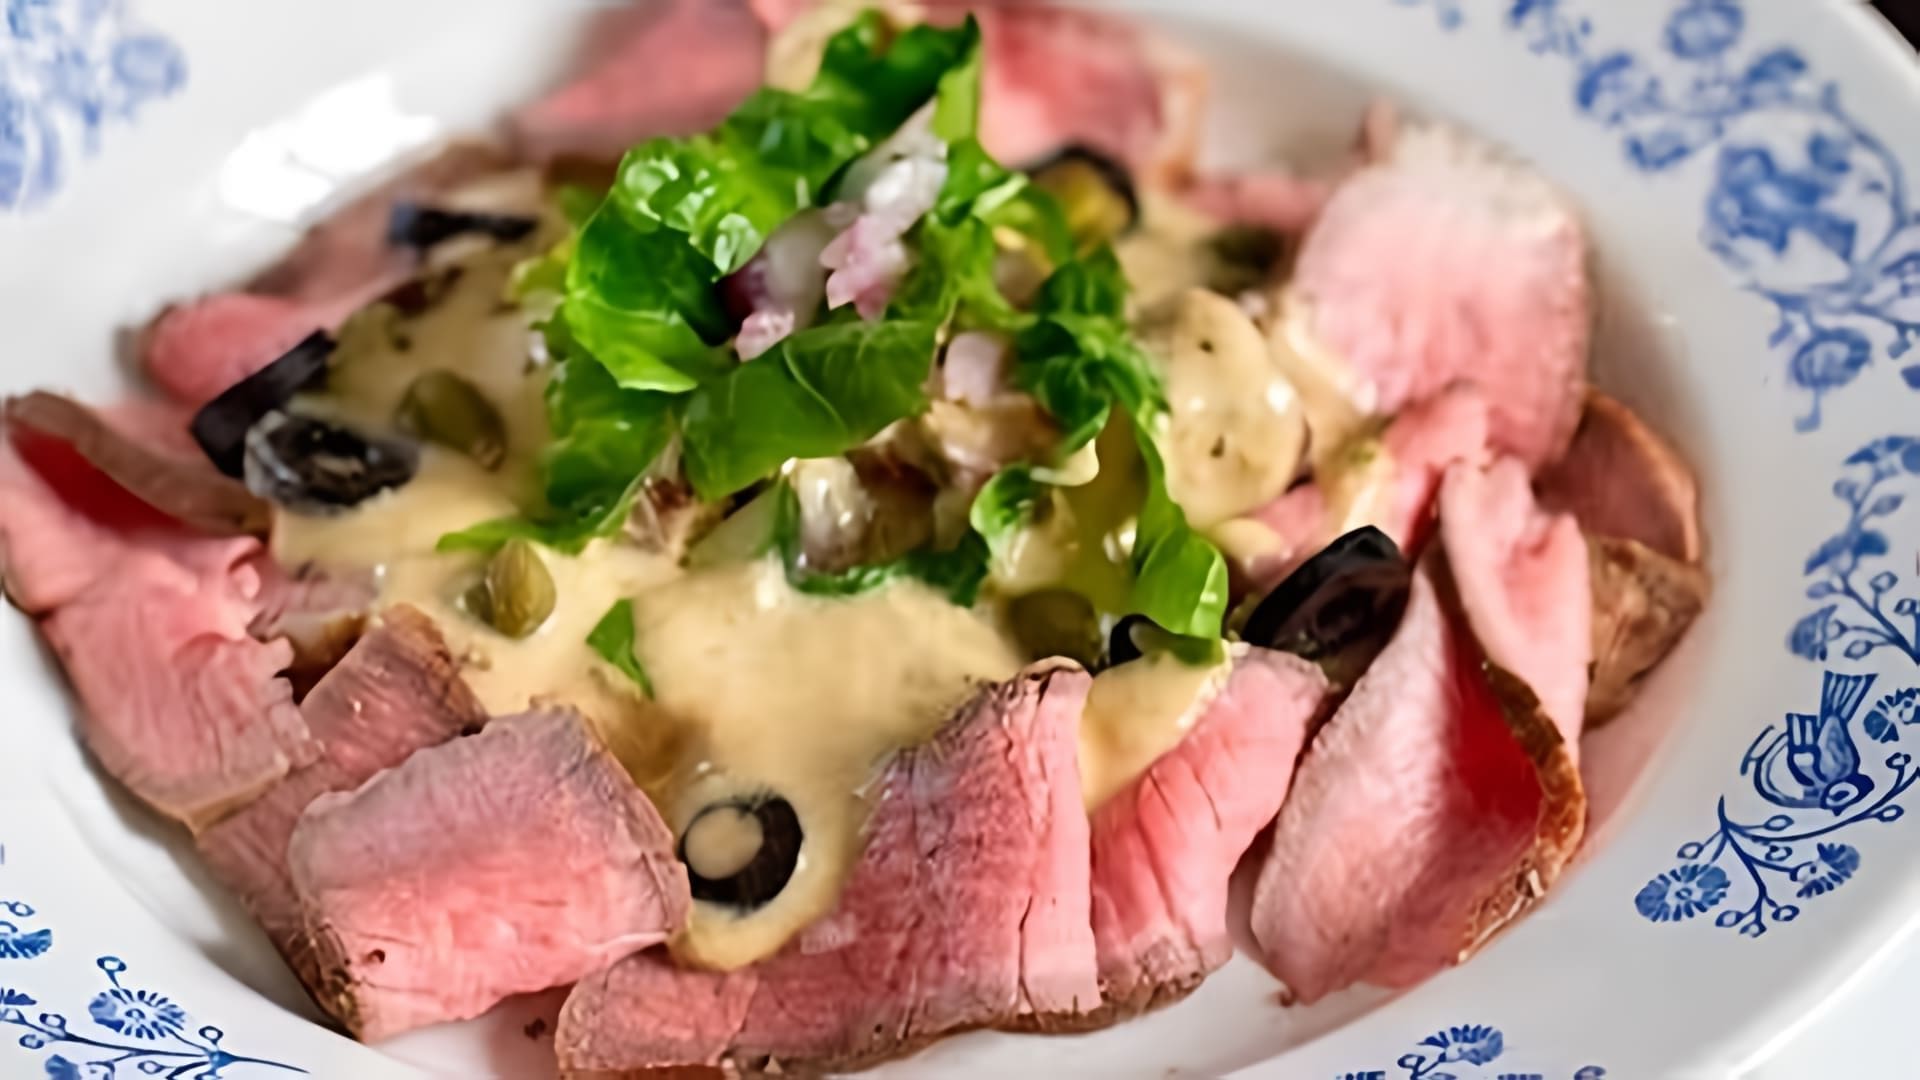 В этом видео демонстрируется рецепт приготовления телятины в соусе из тунца